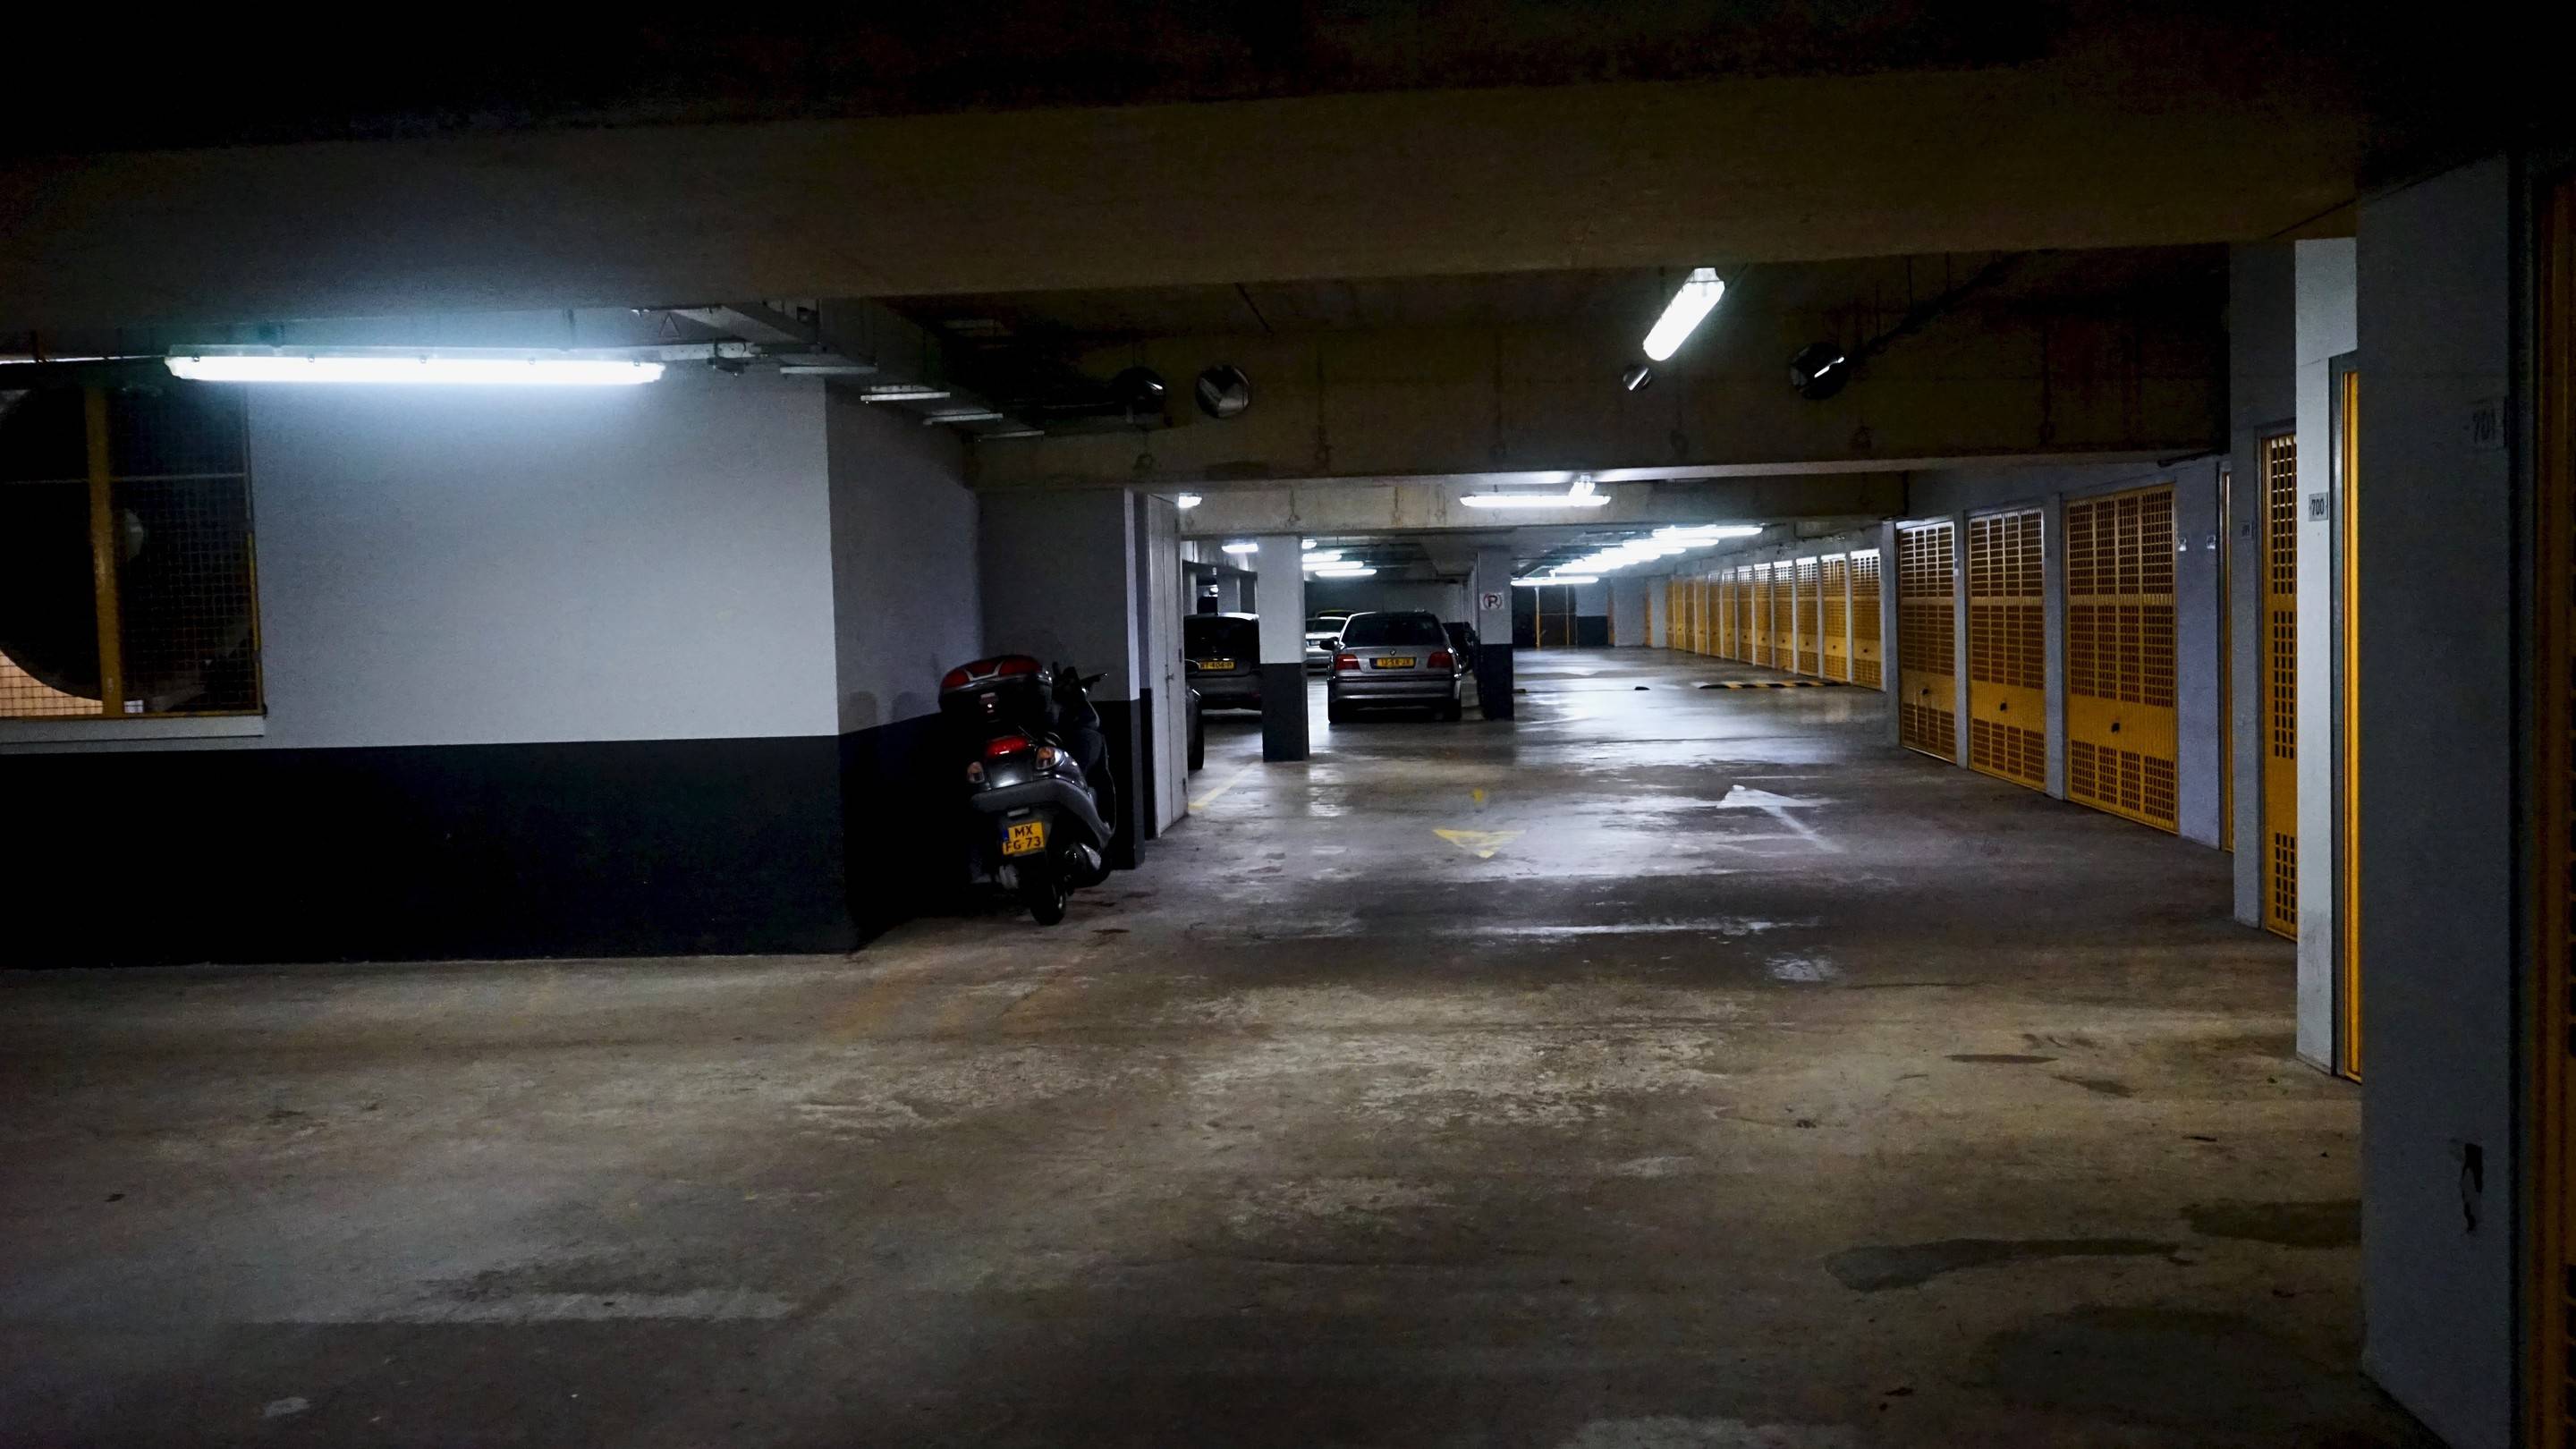 LED-verlichting en domotica in parkeergarages bij woongebouwen zorgen voor besparingen en gevoel van veiligheid